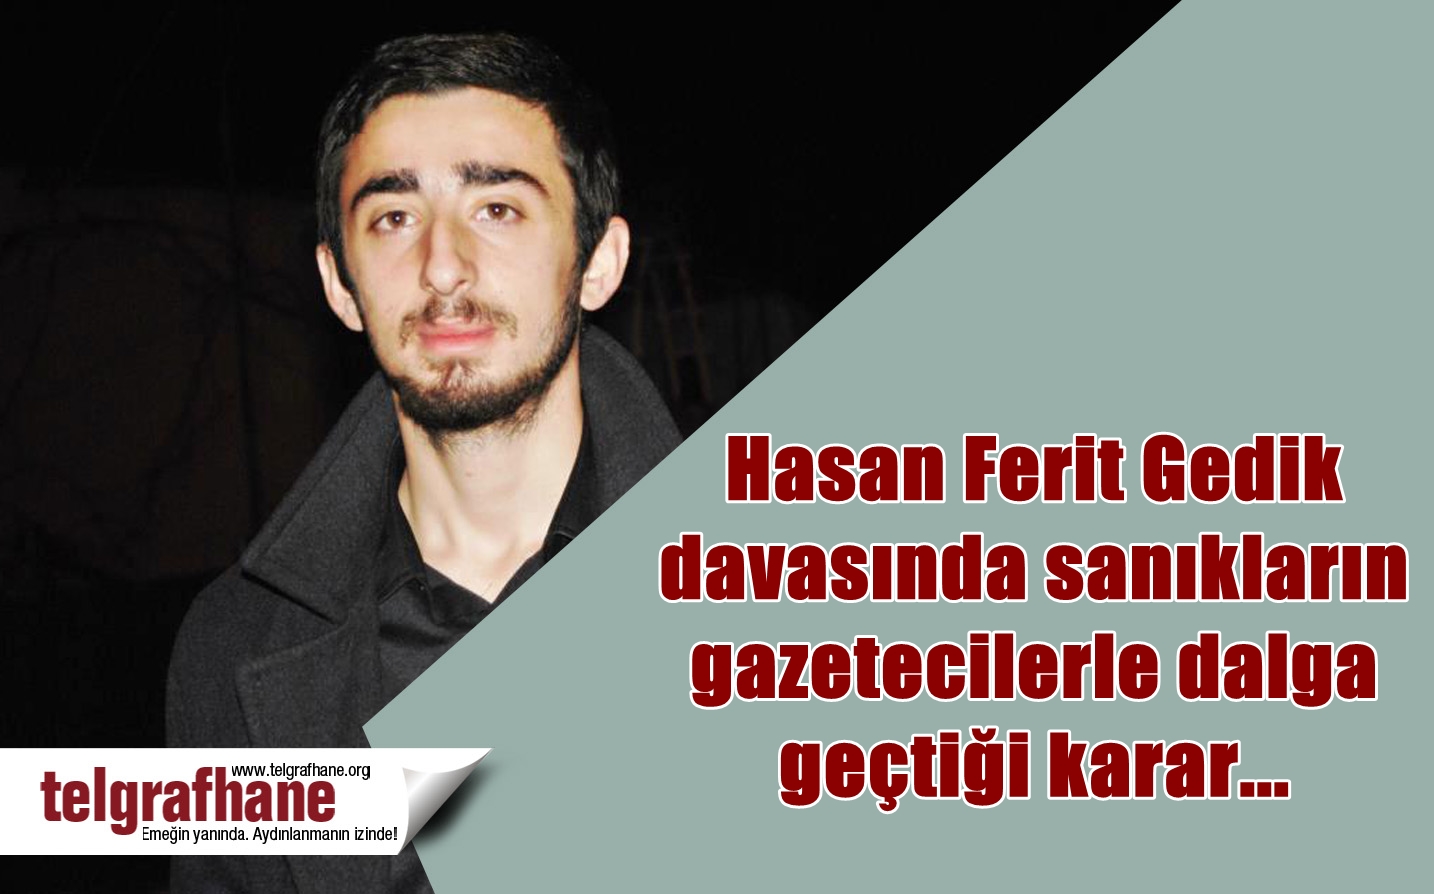 Hasan Ferit Gedik davasında sanıkların gazetecilerle dalga geçtiği karar…